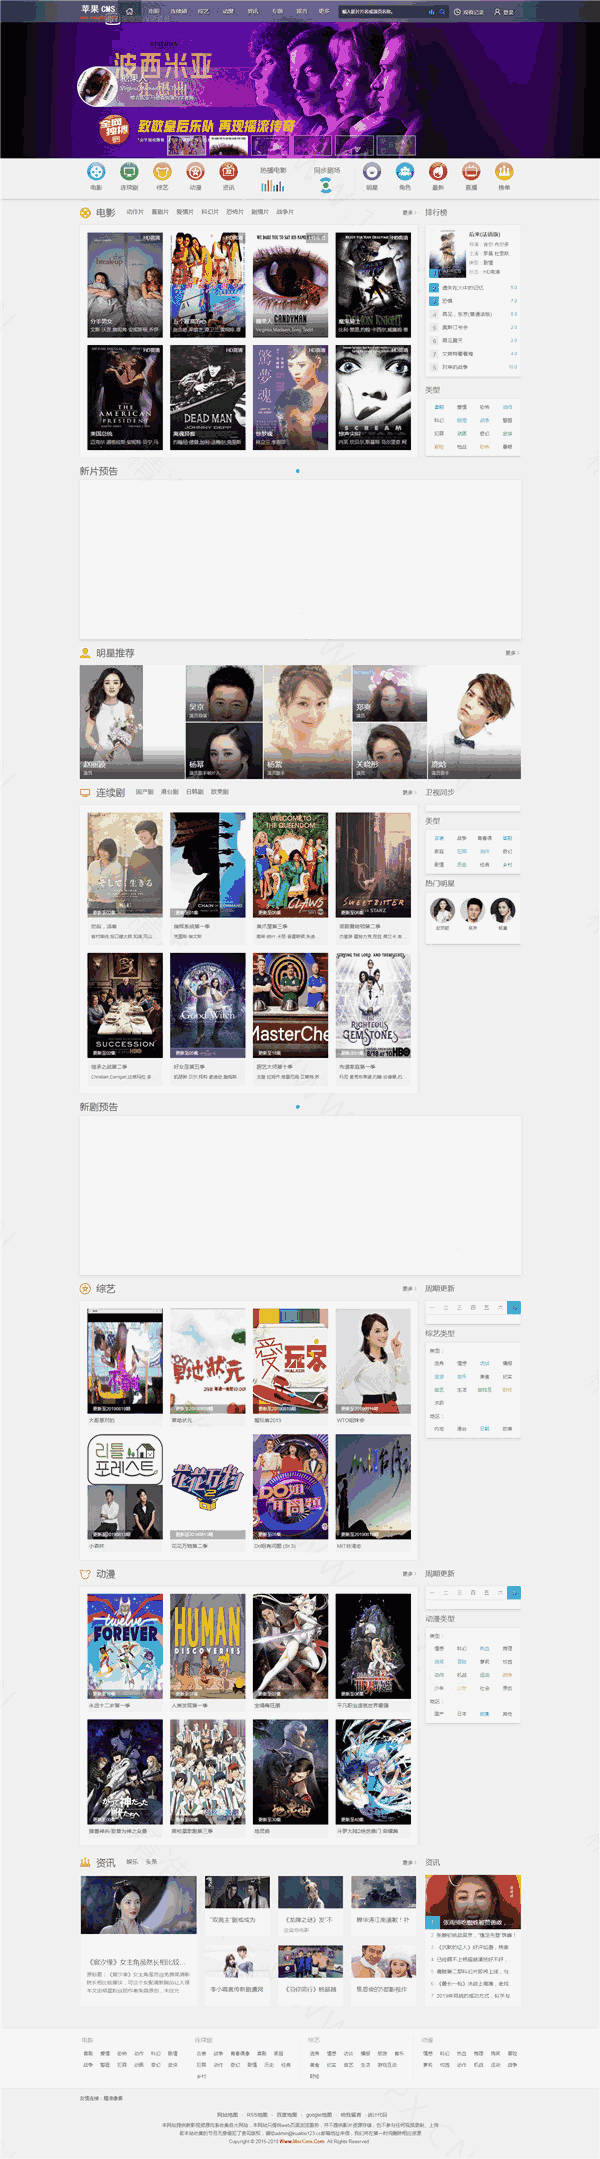 仿赞片电影网站苹果CMS模板预览图